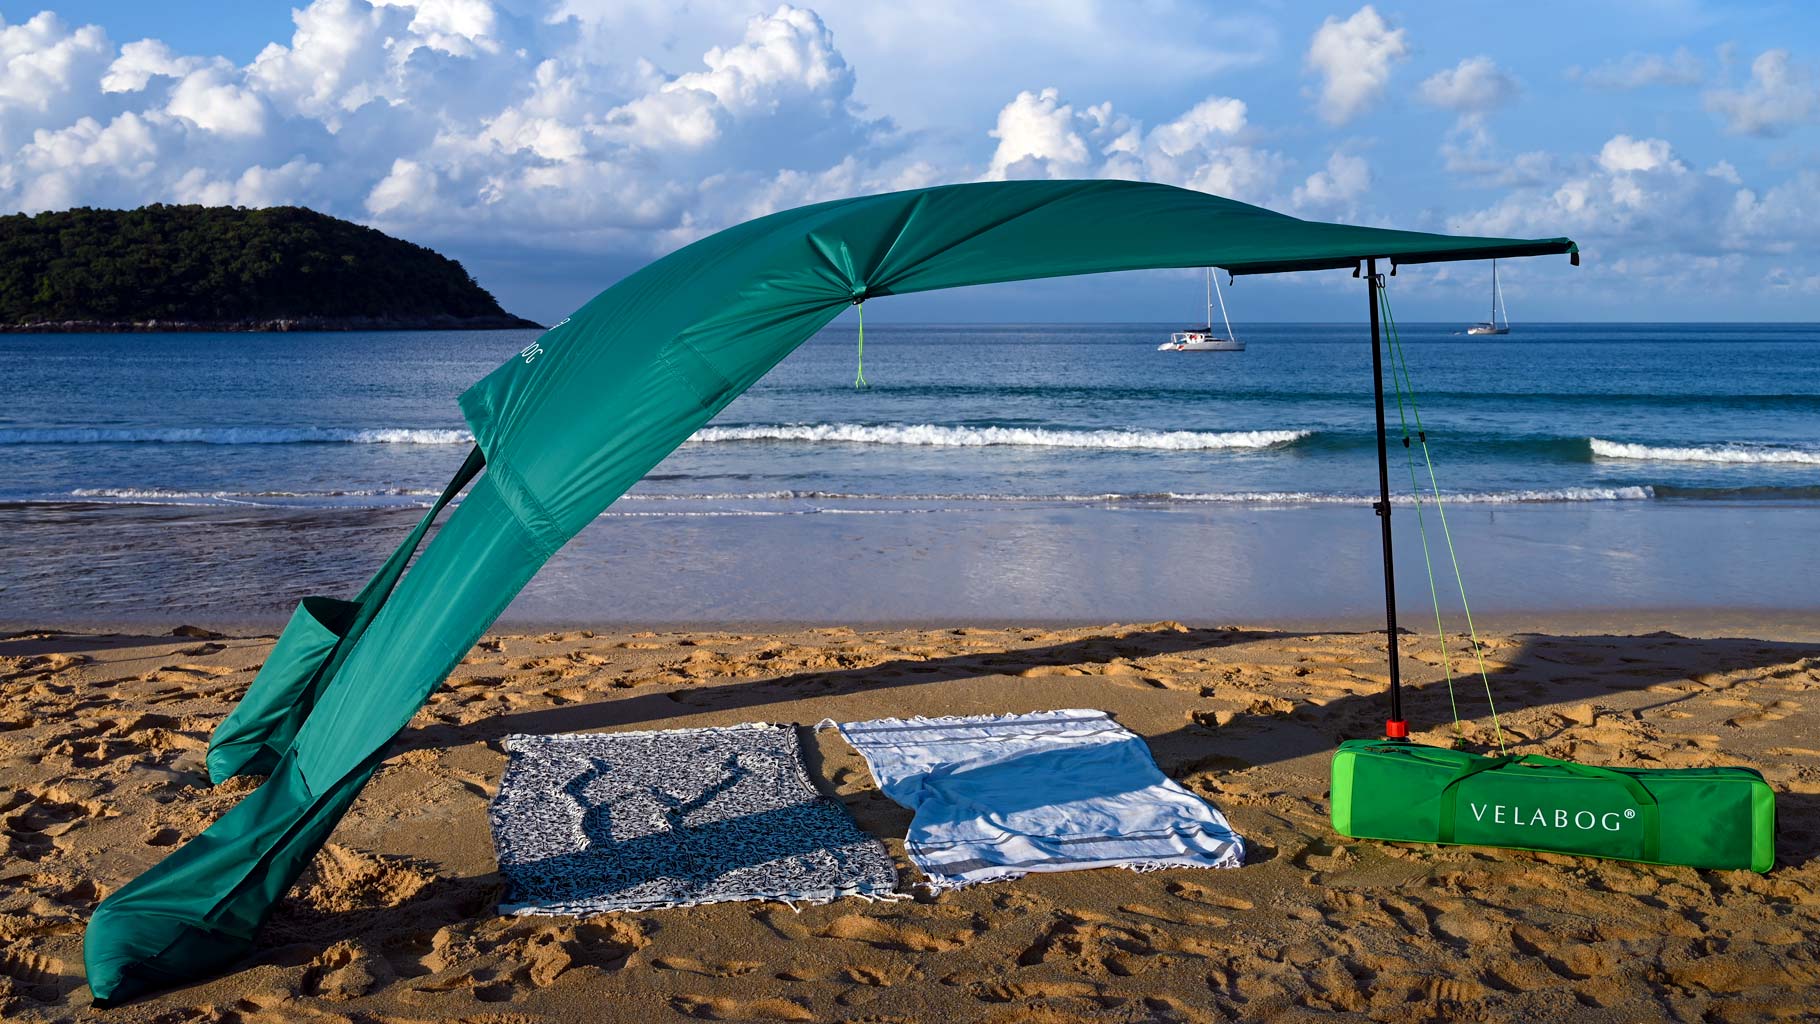 Żagiel słoneczny namiot plażowy Velabog Breeze, zielony, na plaży z wiatrem, w Tajlandii. Żagiel słoneczny, parasol plażowy i namiot plażowy w jednym. Wysoka jakość, trwałość i styl. Najlepsze zadaszenie na plażę. Widok z boku.